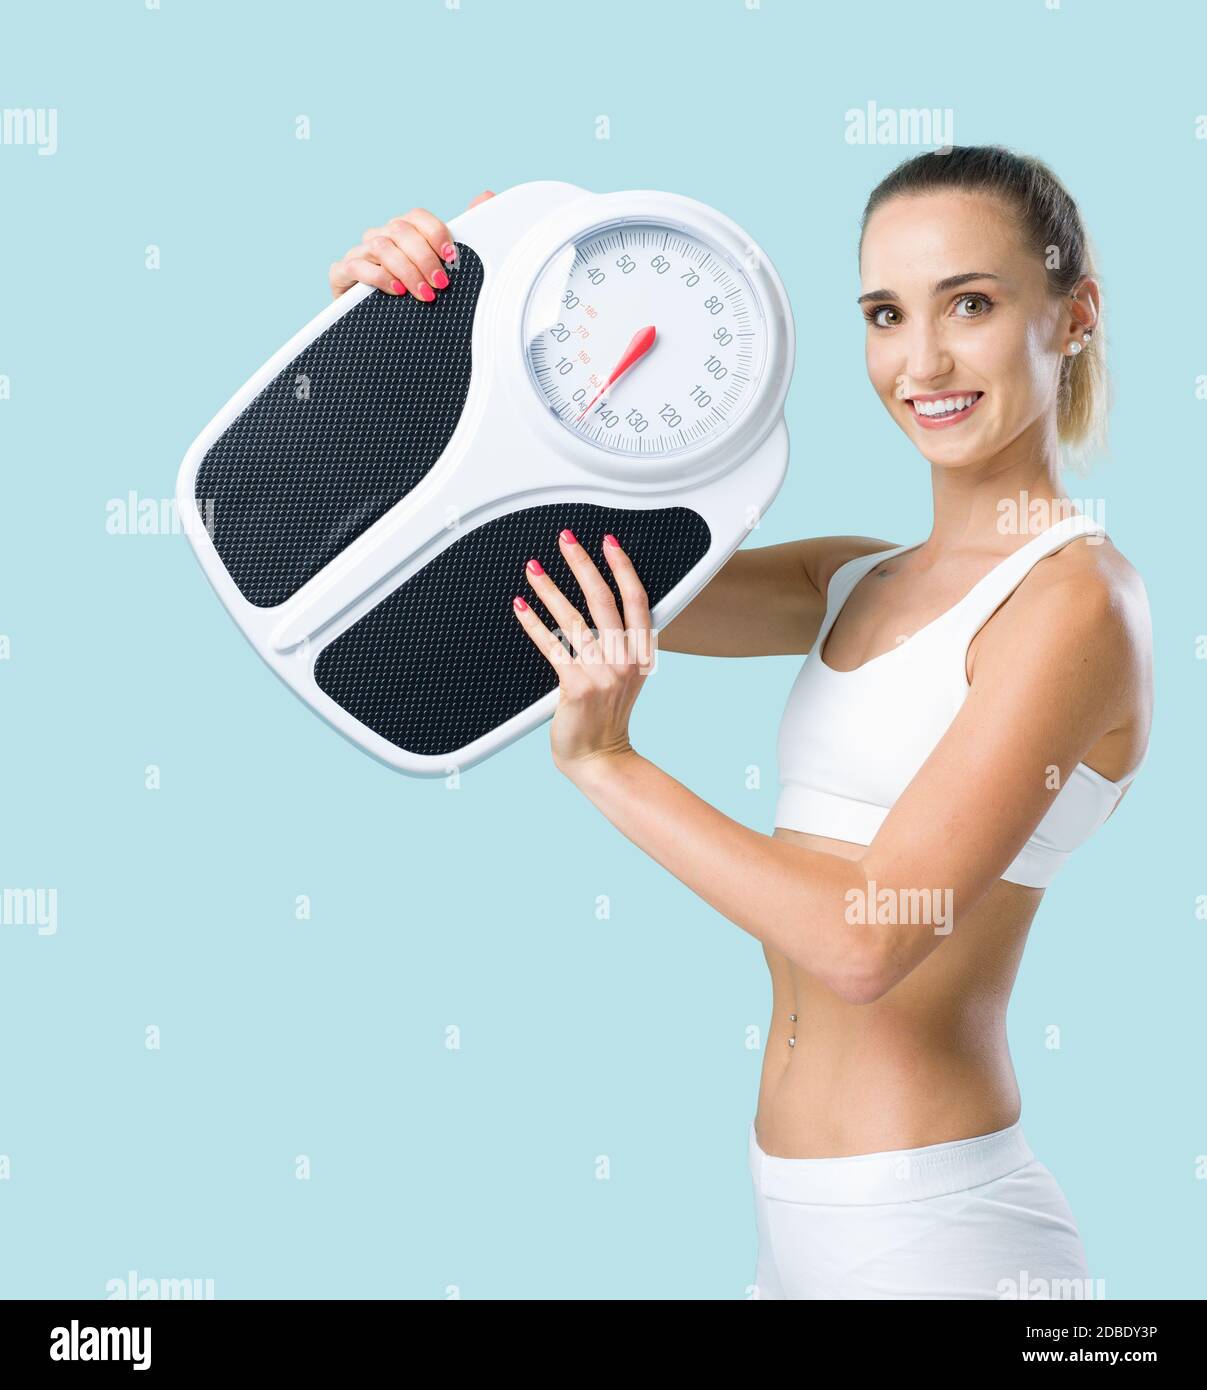 Mujer delgada y sonriente sosteniendo una báscula y mirando la cámara, la pérdida de peso y el concepto de fitness Foto de stock